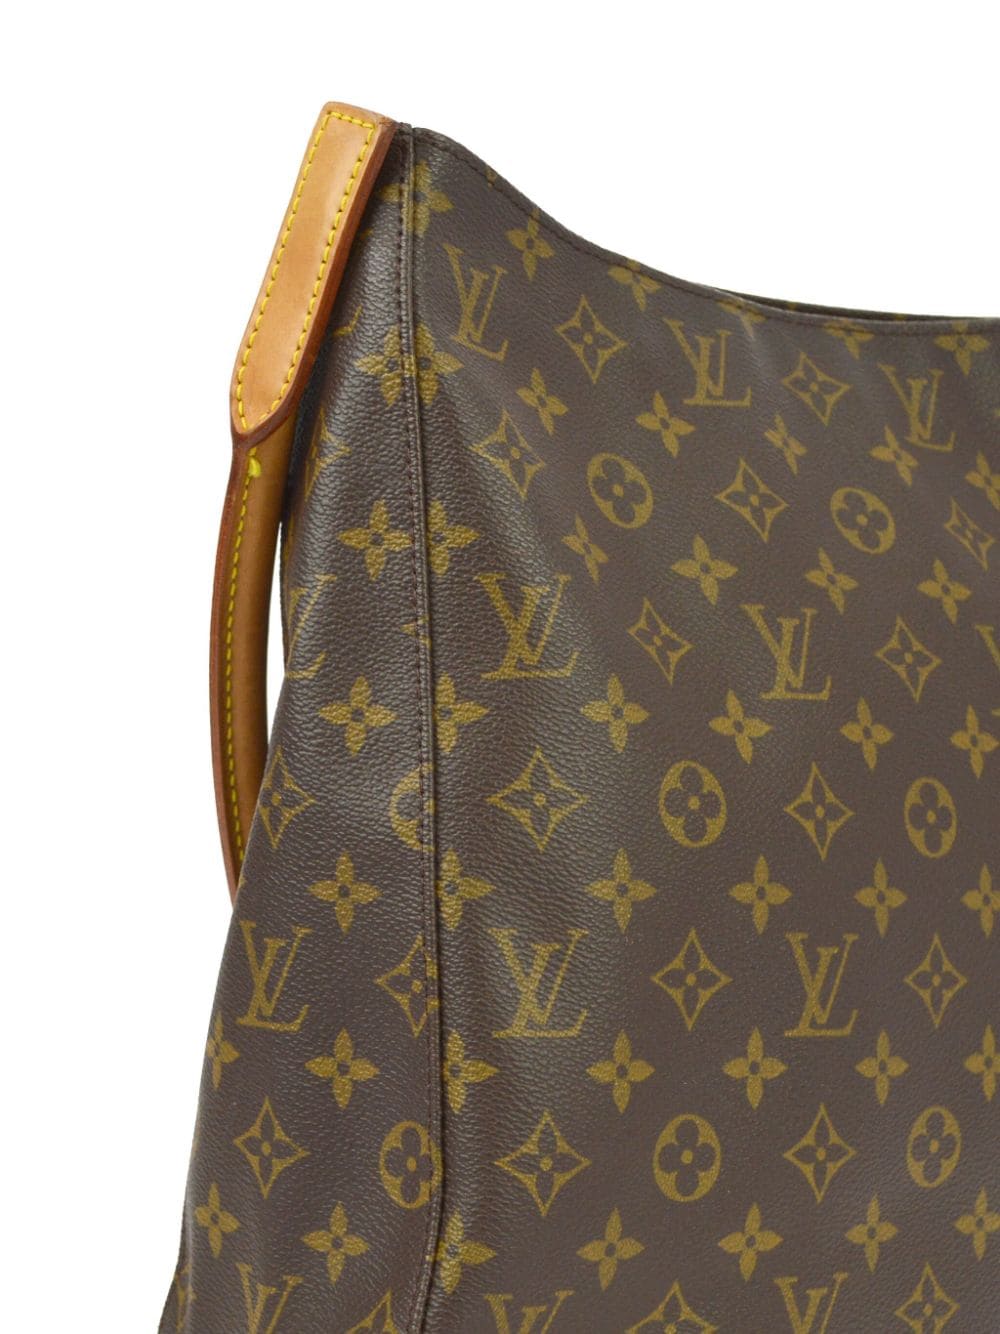 Pre-owned Louis Vuitton 1999 Looping Gm Handbag In Brown